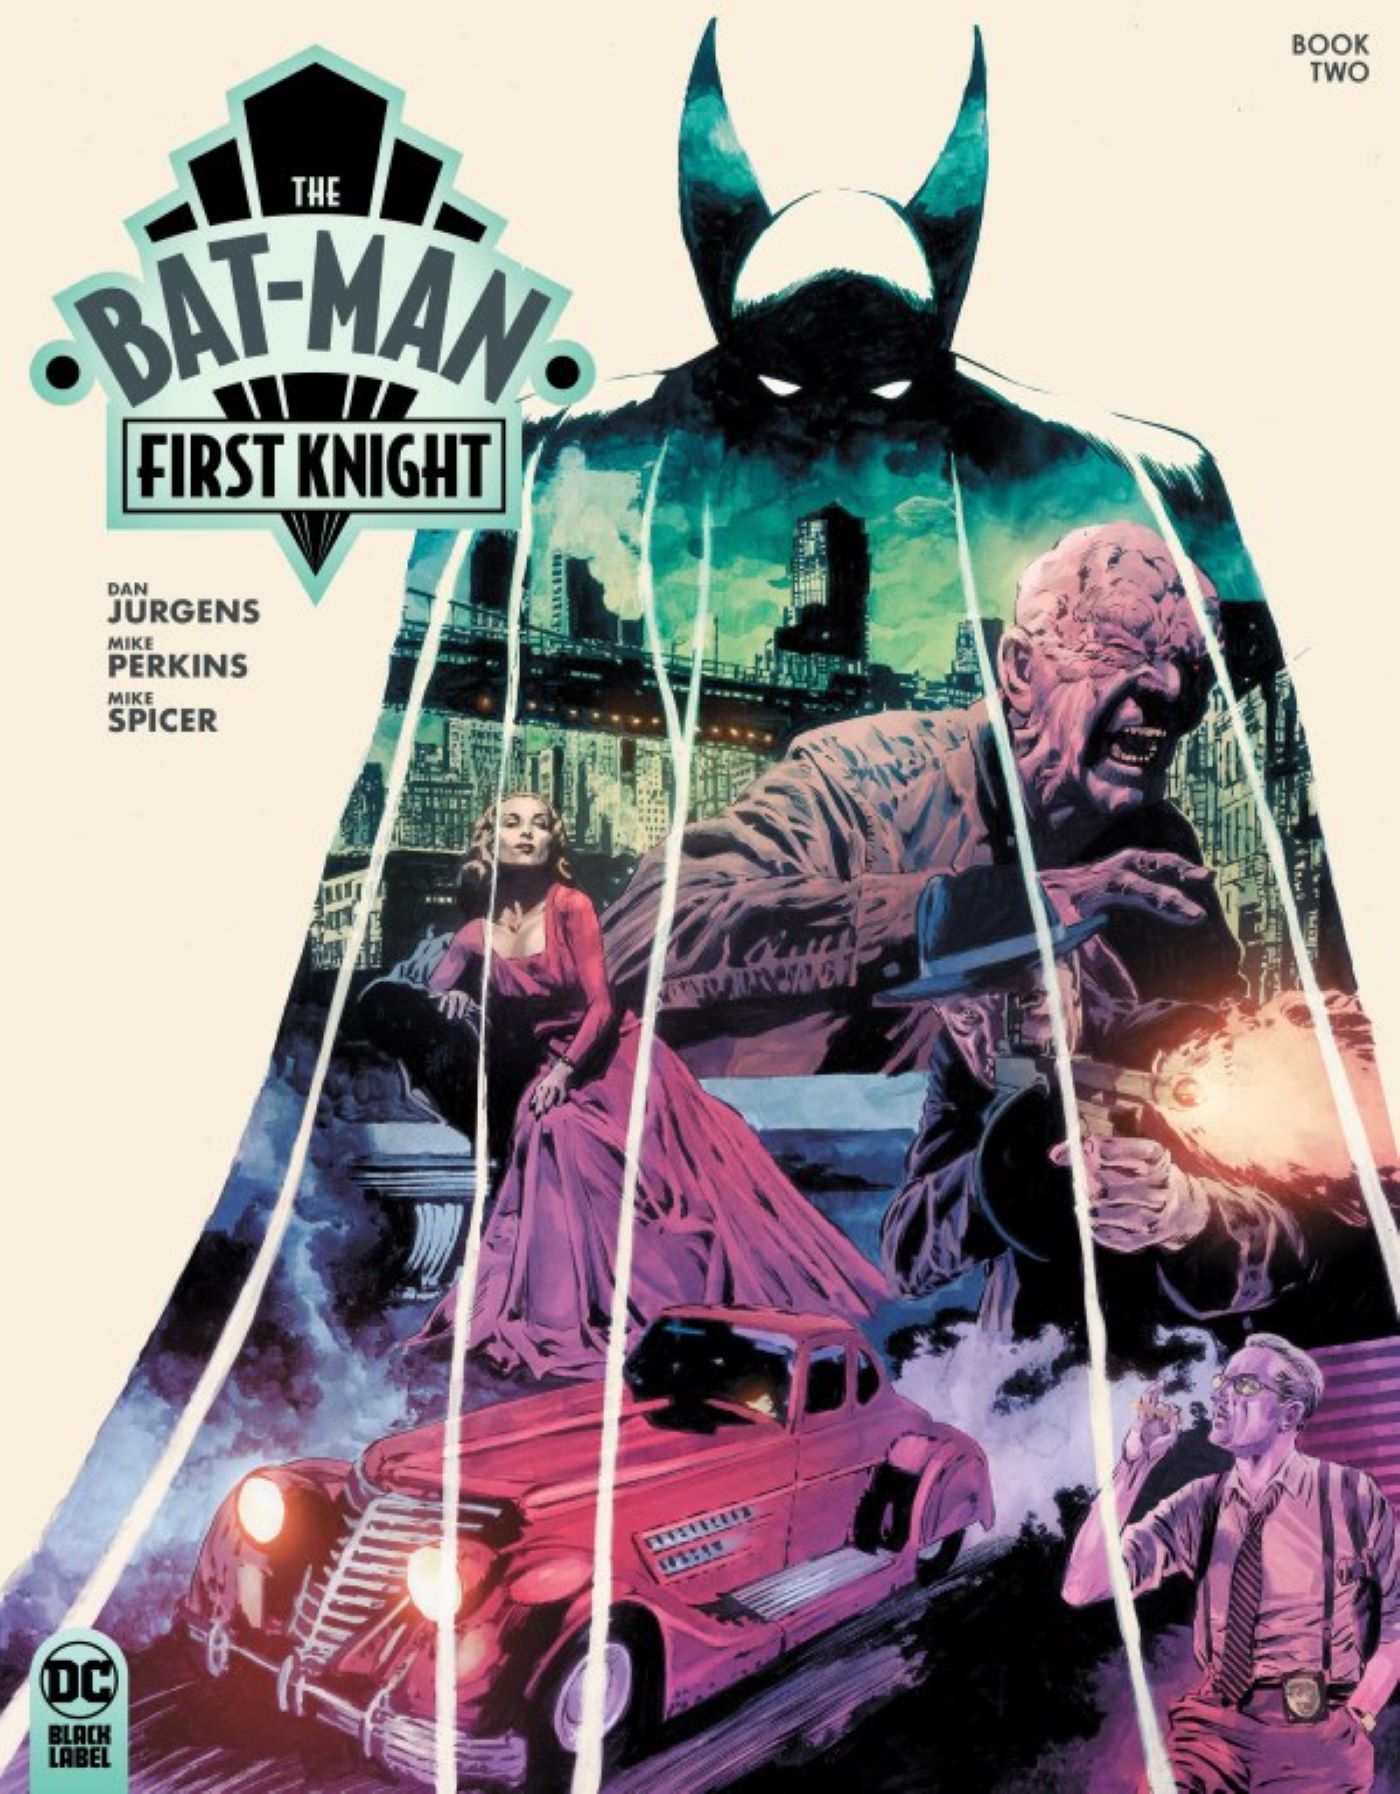 Capa do primeiro cavaleiro do Bat-Man #2